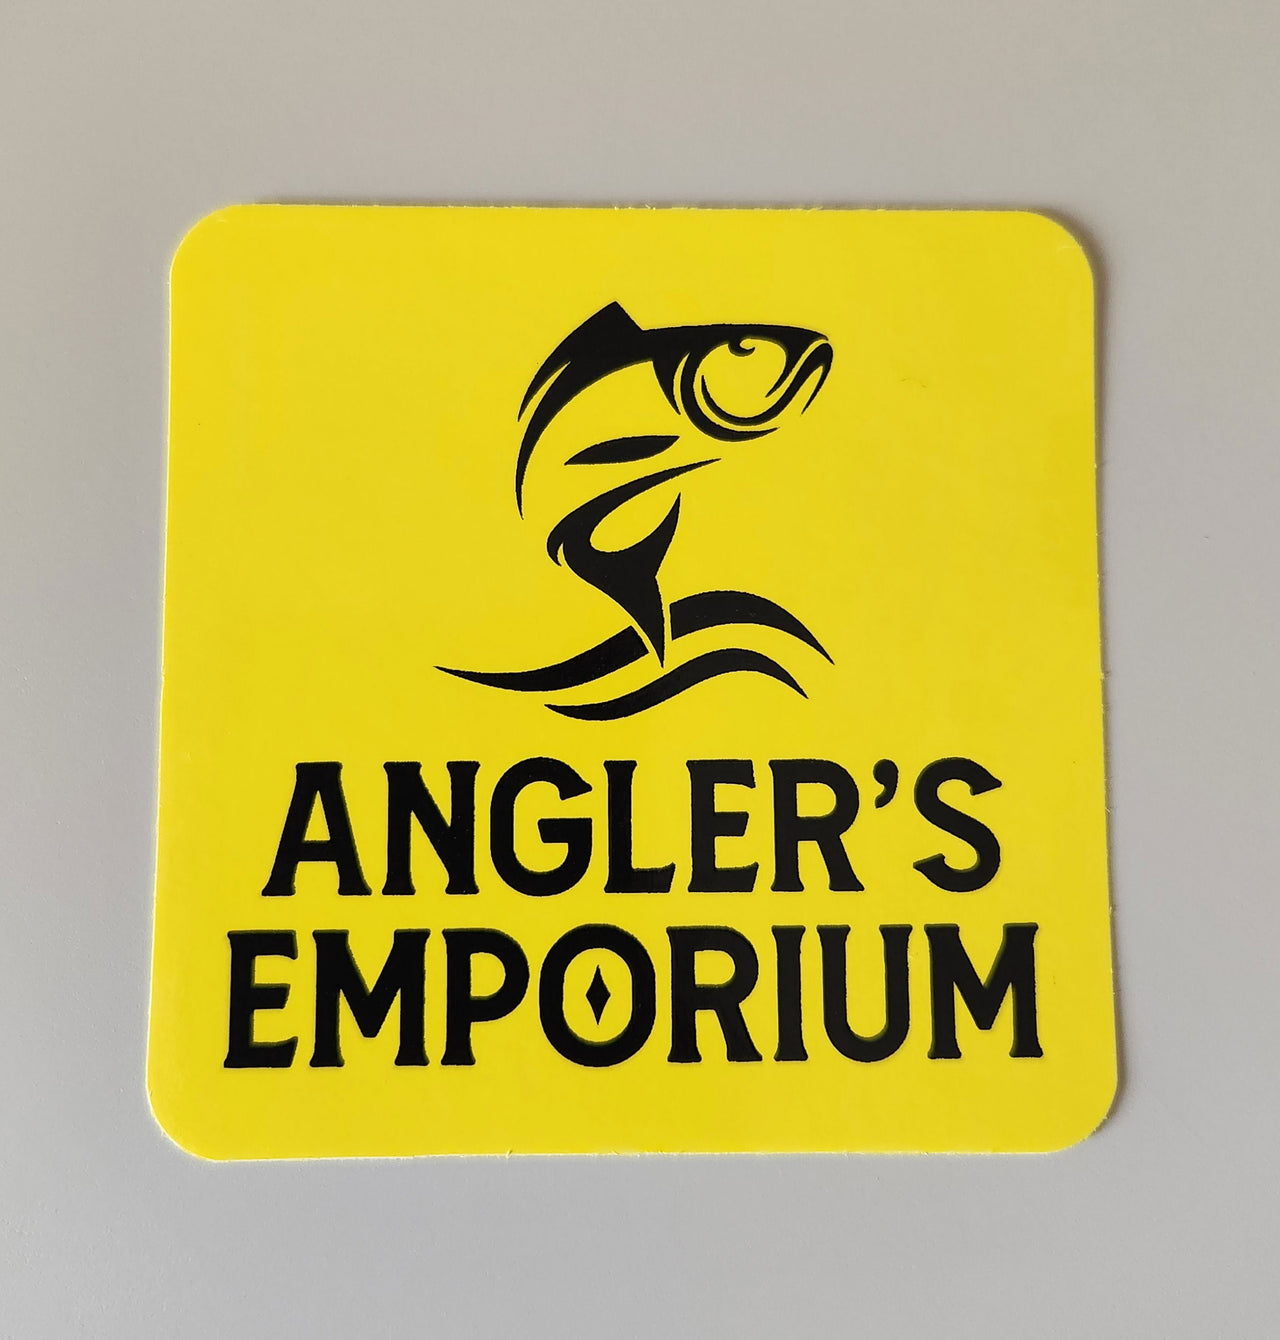 Angler's Emporium Sticker pack